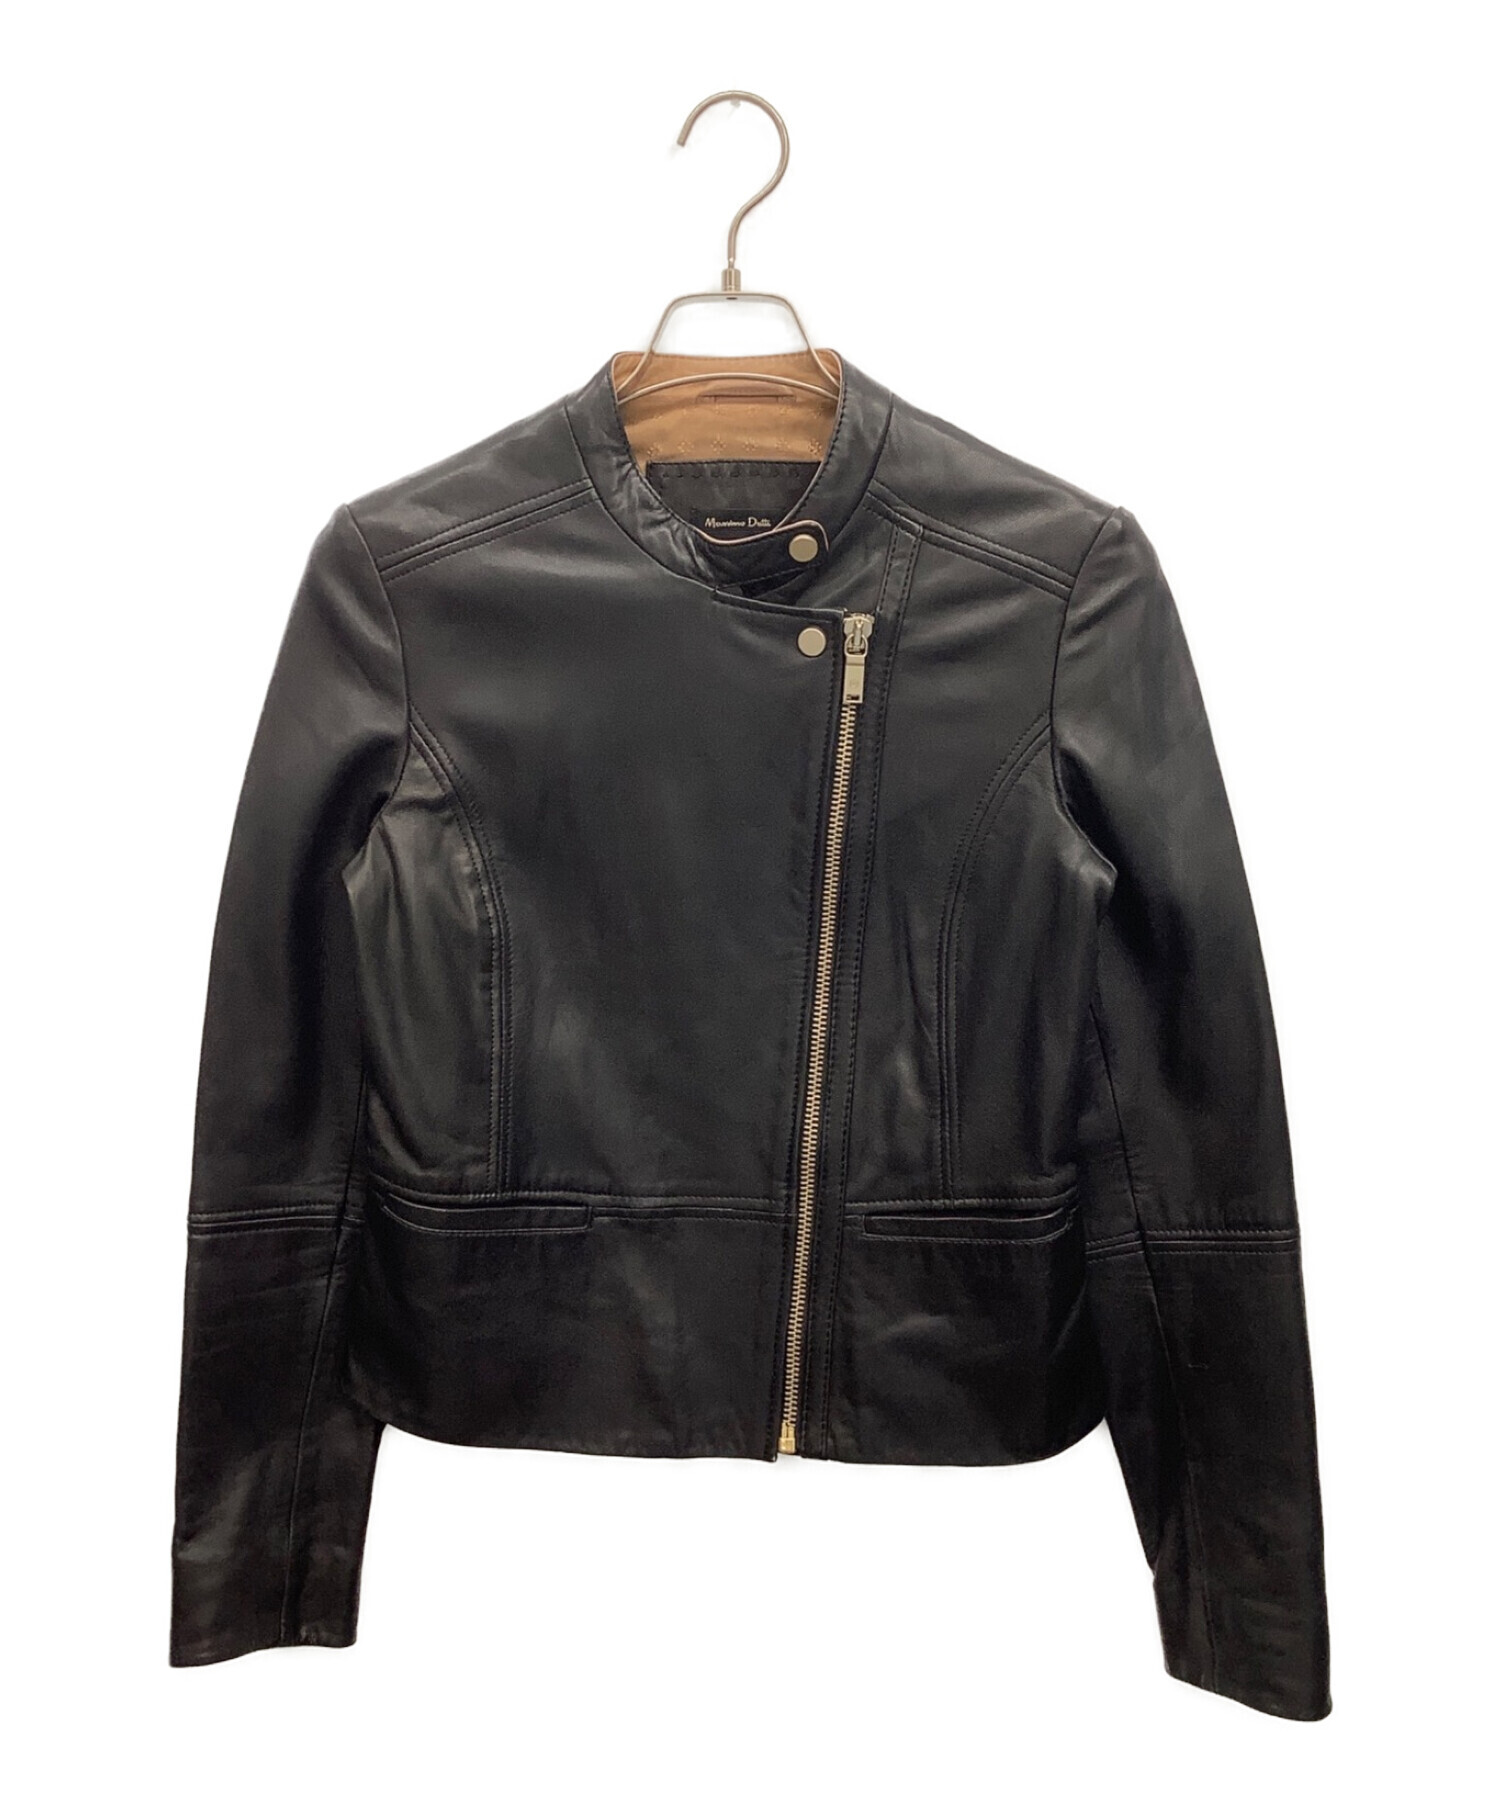 Massimo Dutti 本革ブラックジャケット身幅脇の横から50cm - レザー